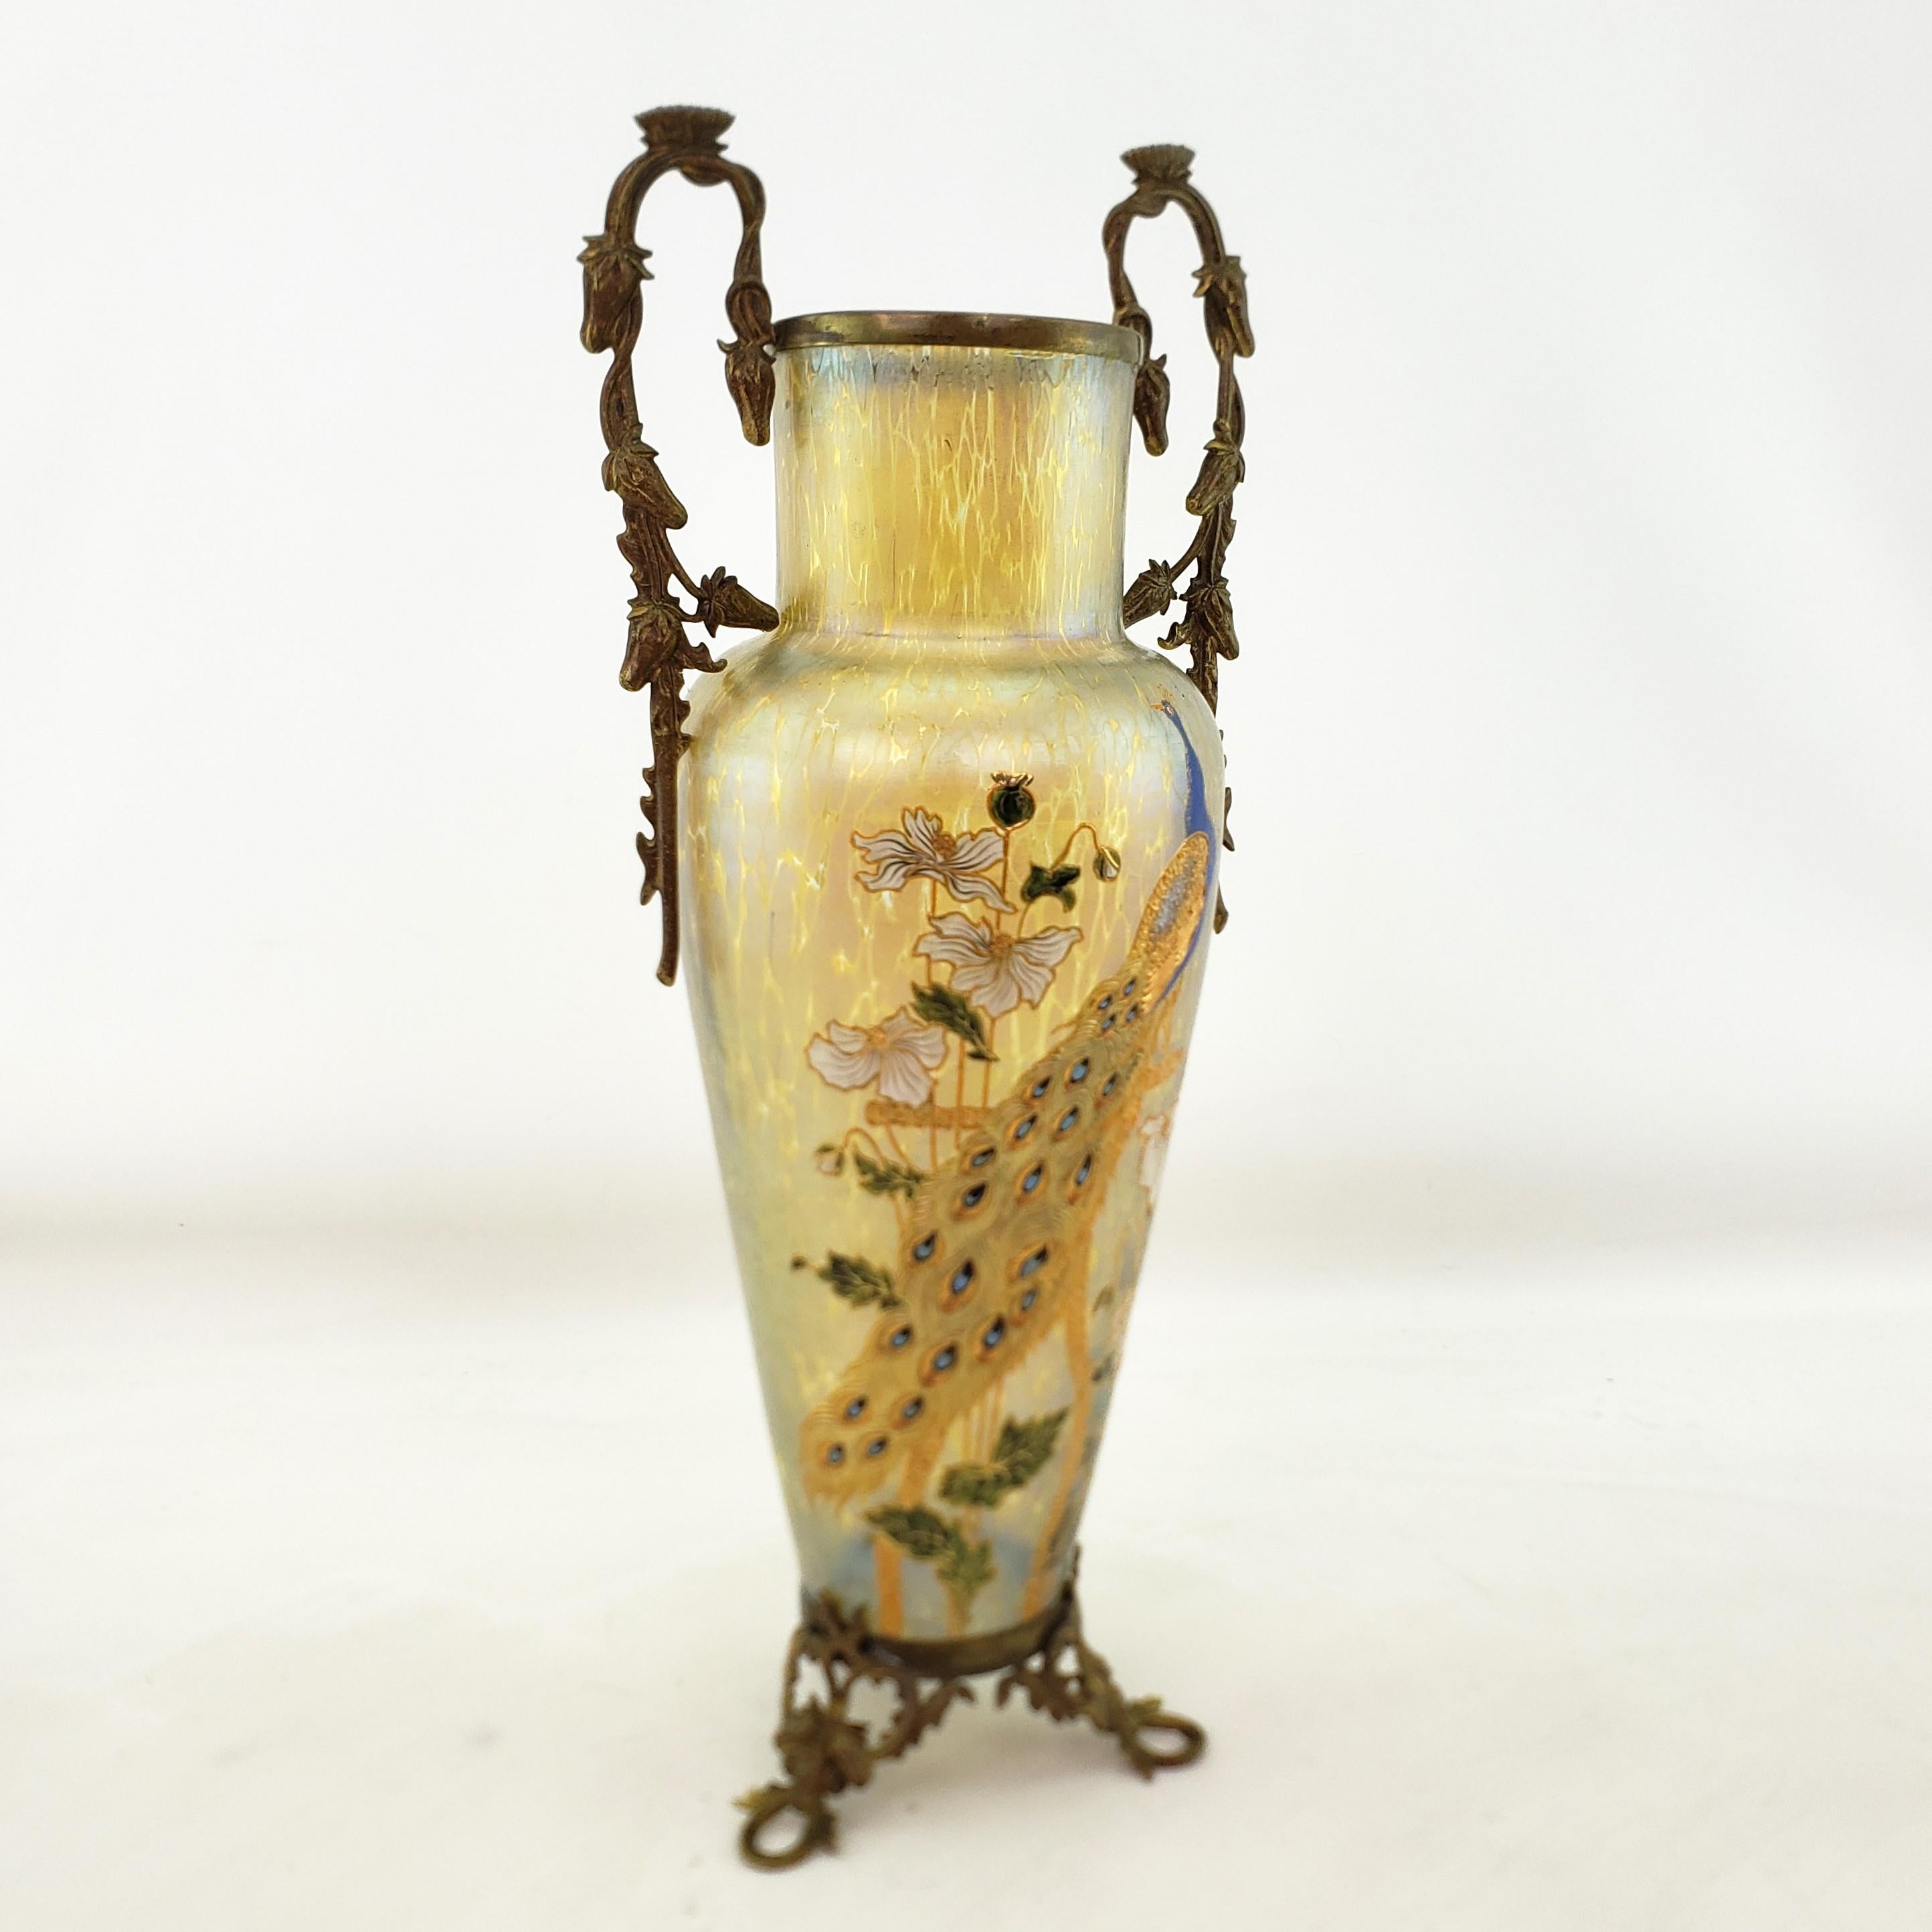 Diese antike Vase ist unsigniert, wurde aber von der Glasfabrik Loetz in der Tschechischen Republik um 1900 im Jugendstil hergestellt. Die Vase ist aus goldfarbenem, irisierendem 